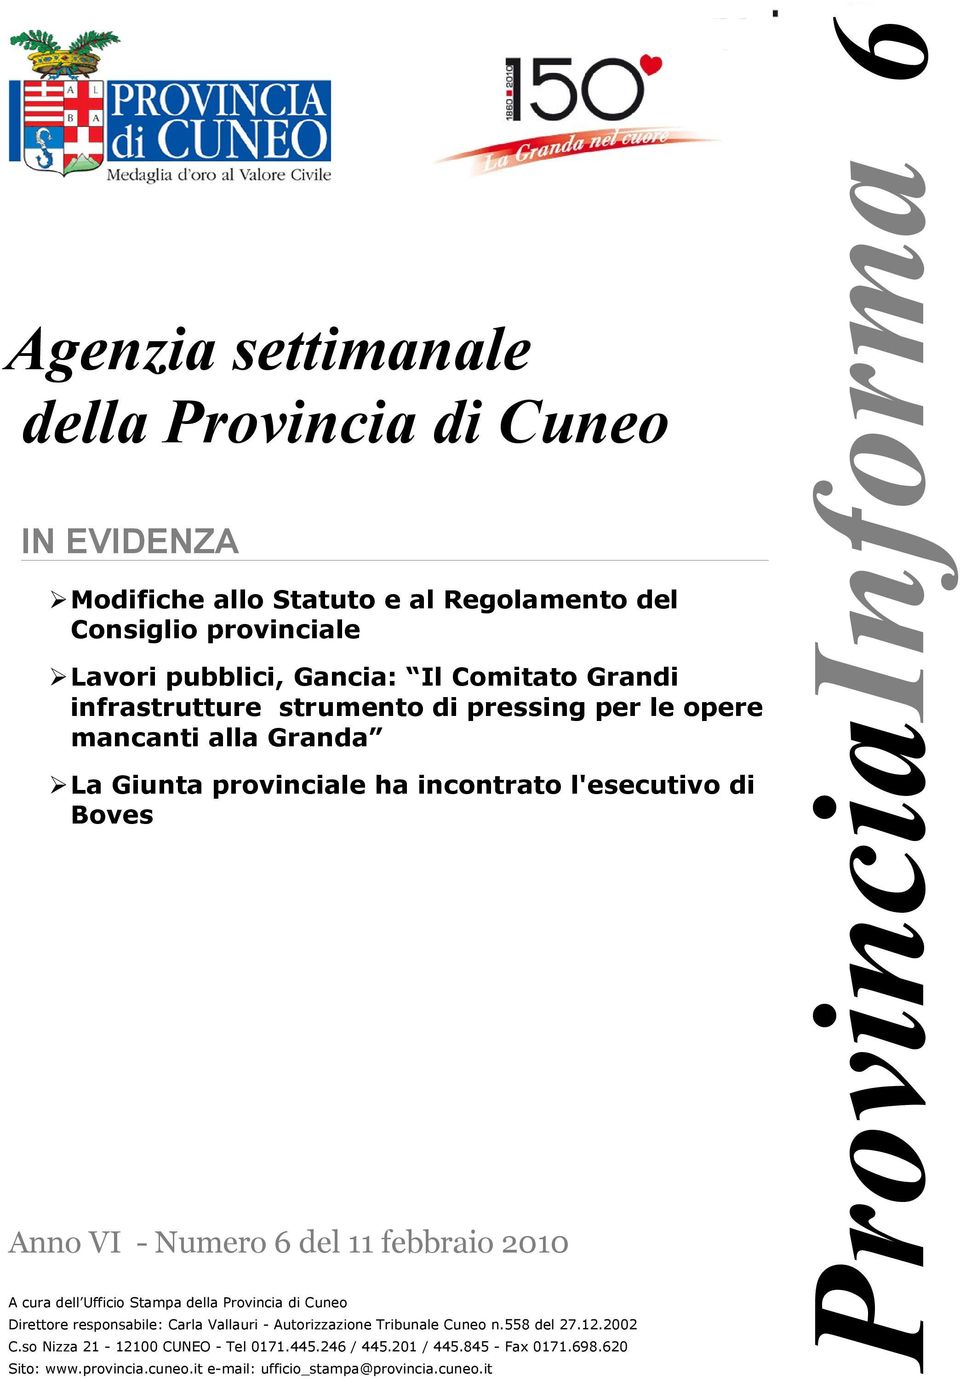 febbraio 2010 A cura dell Ufficio Stampa della Provincia di Cuneo Direttore responsabile: Carla Vallauri - Autorizzazione Tribunale Cuneo n.558 del 27.12.2002 C.